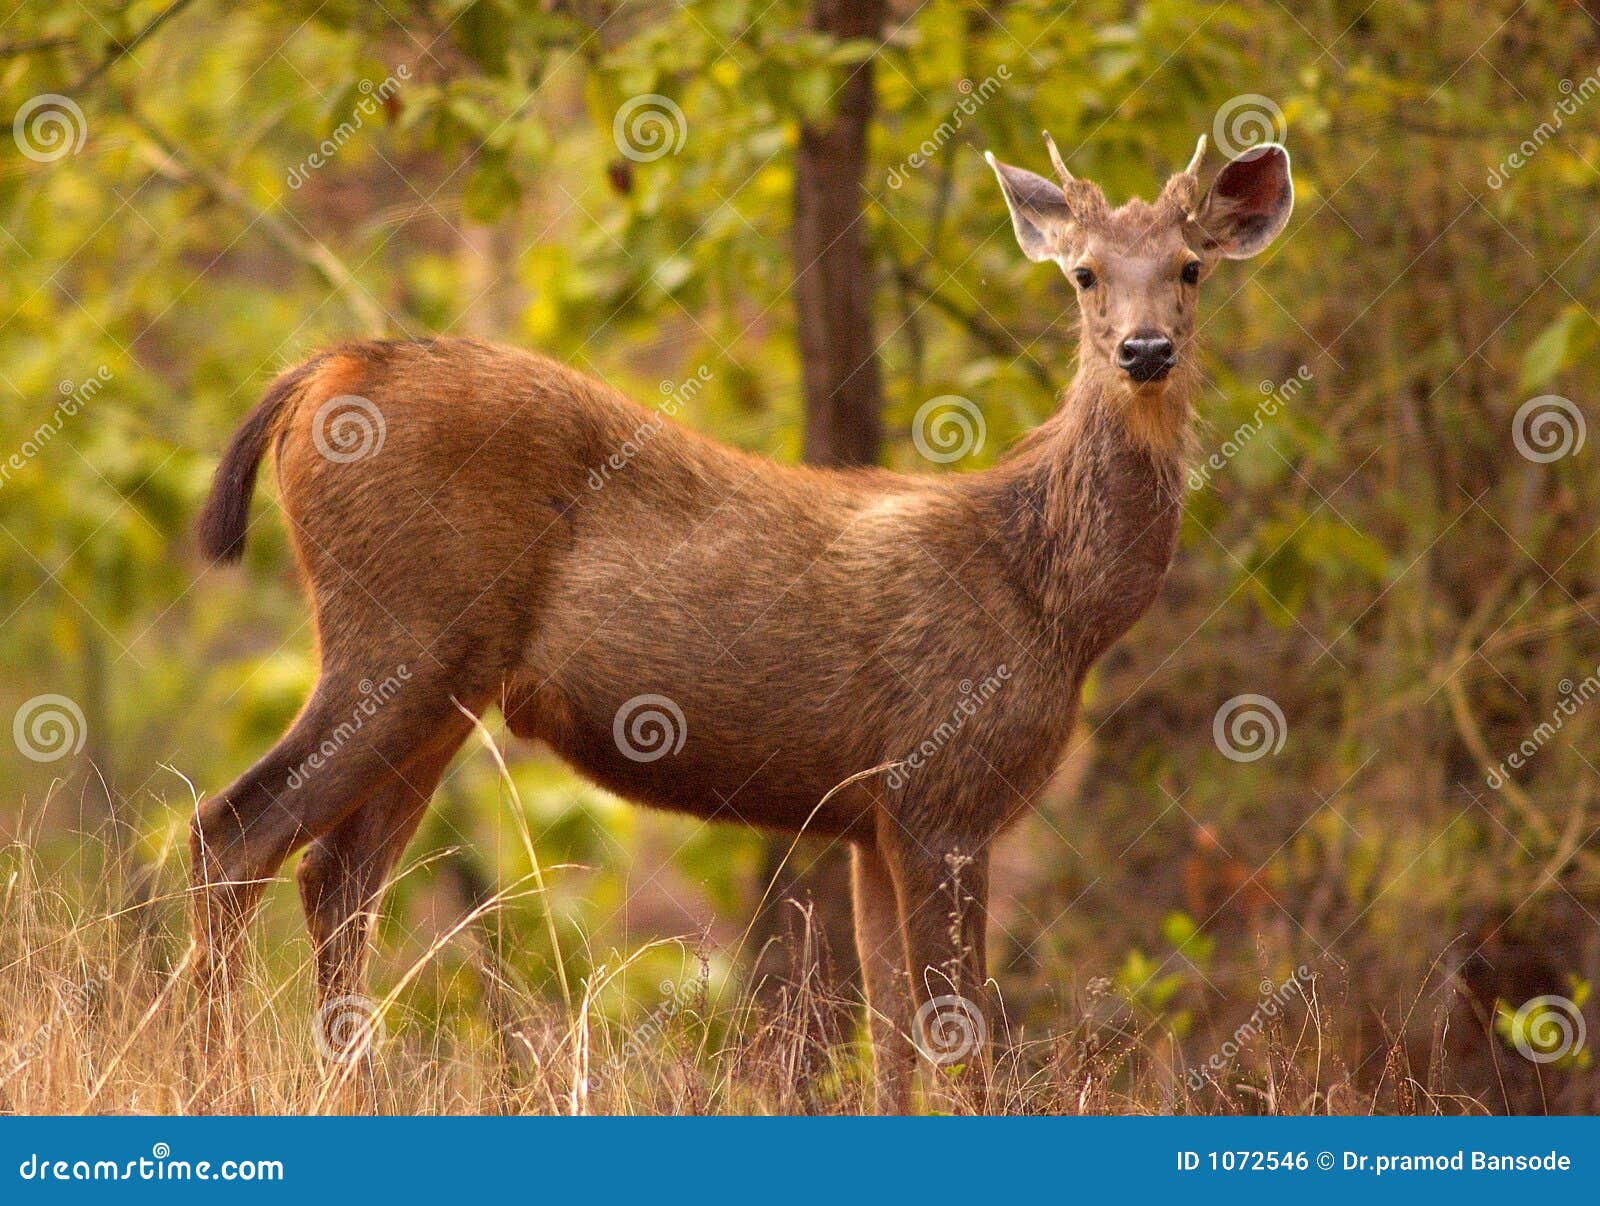 Indian sambar deer stock photo. Image of horns, india - 1072546